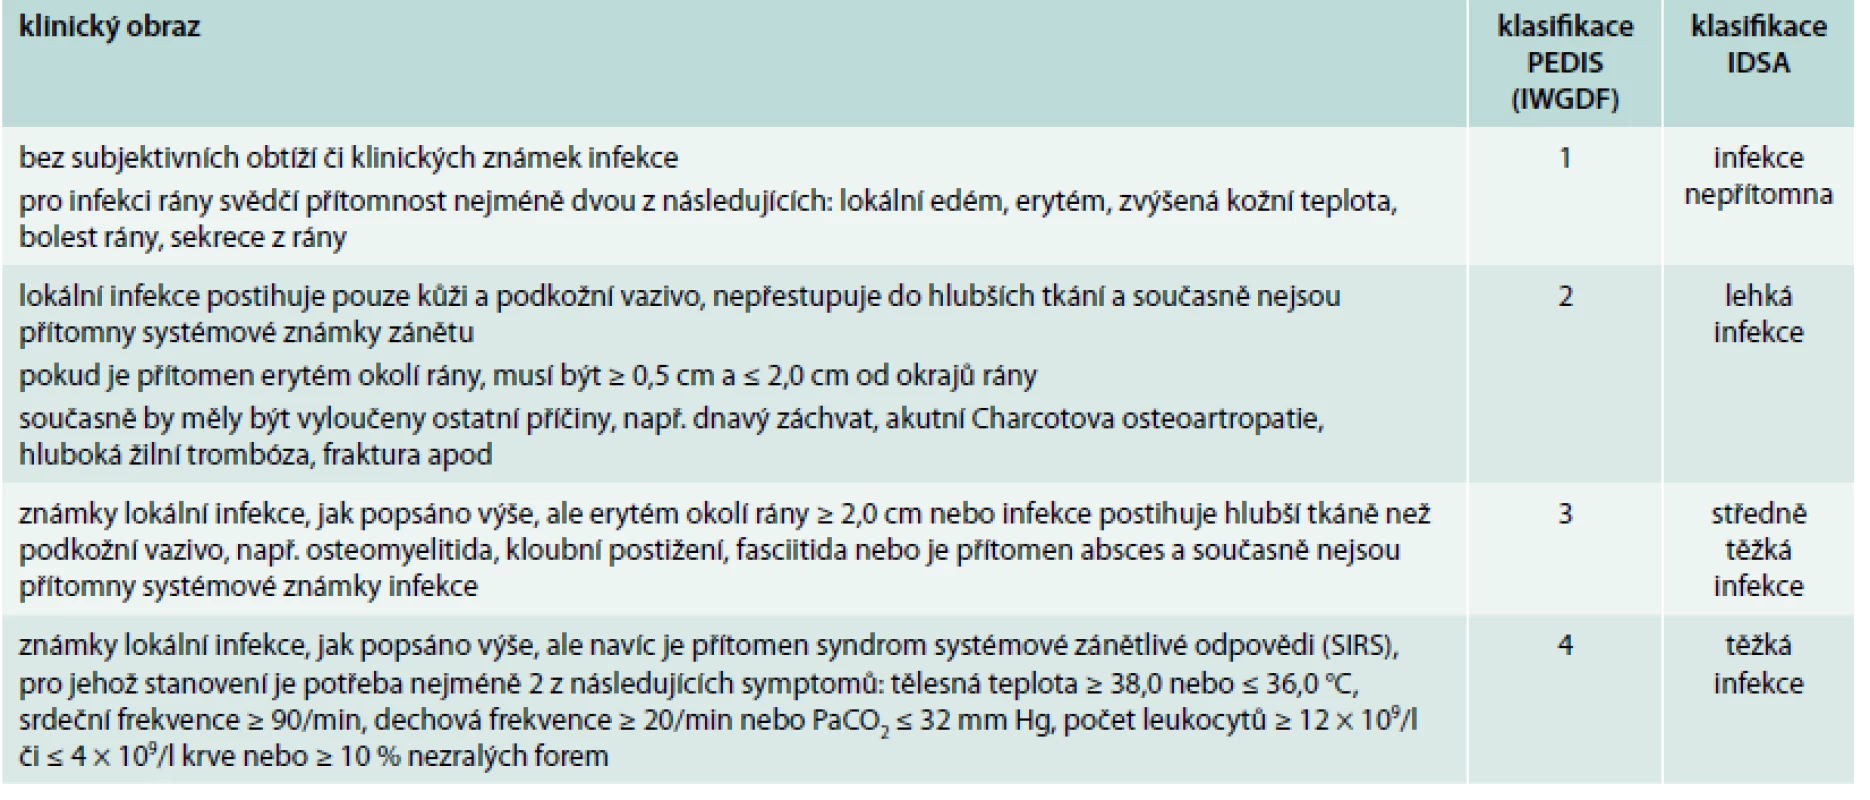 Klasifikace infekce při syndromu diabetické nohy